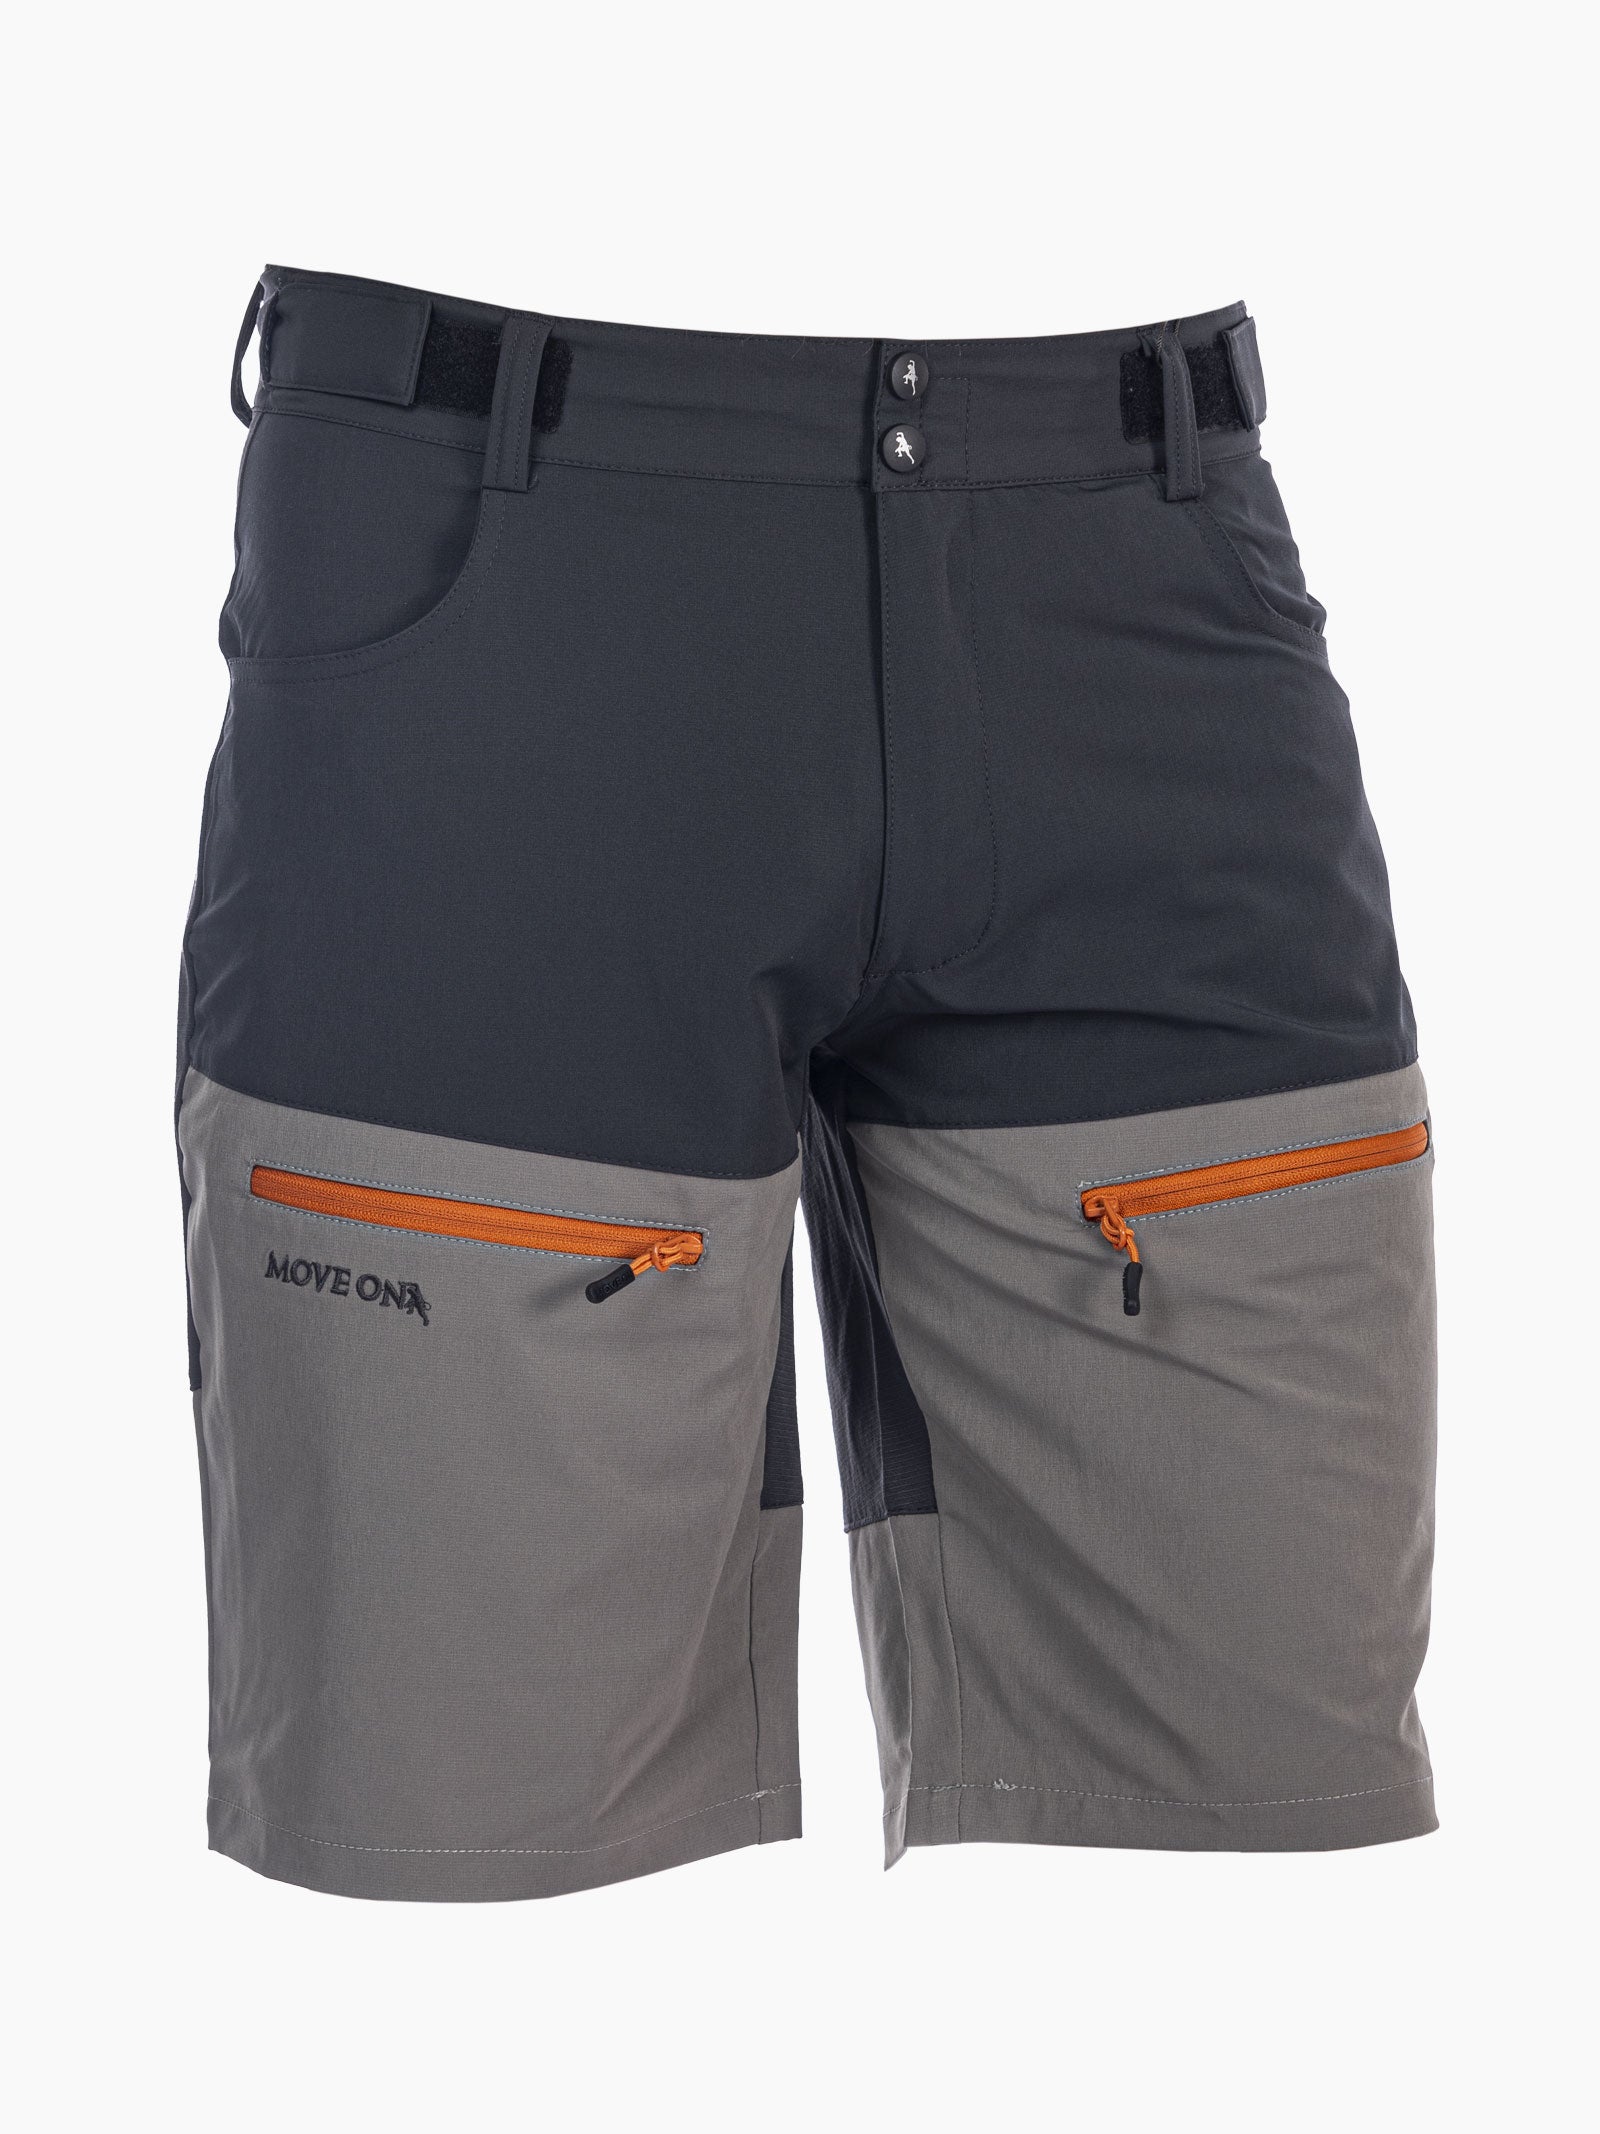 Skei herre MoveOn shorts - Granitt/Skifer/Tiger